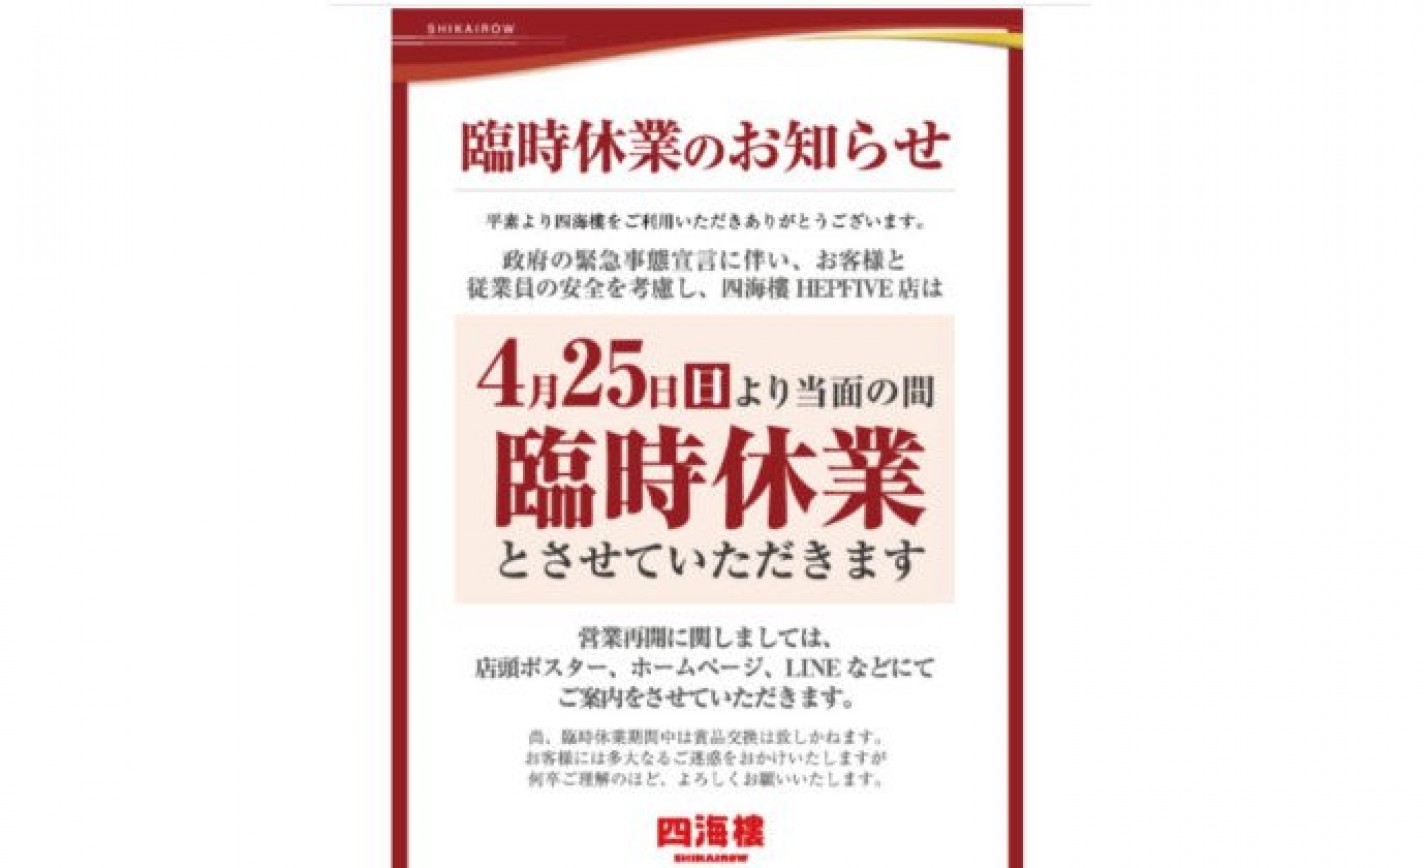 大阪府遊協、緊急事態宣言に伴い、組合員パチンコ店に方針を伝達 eyecatch-image